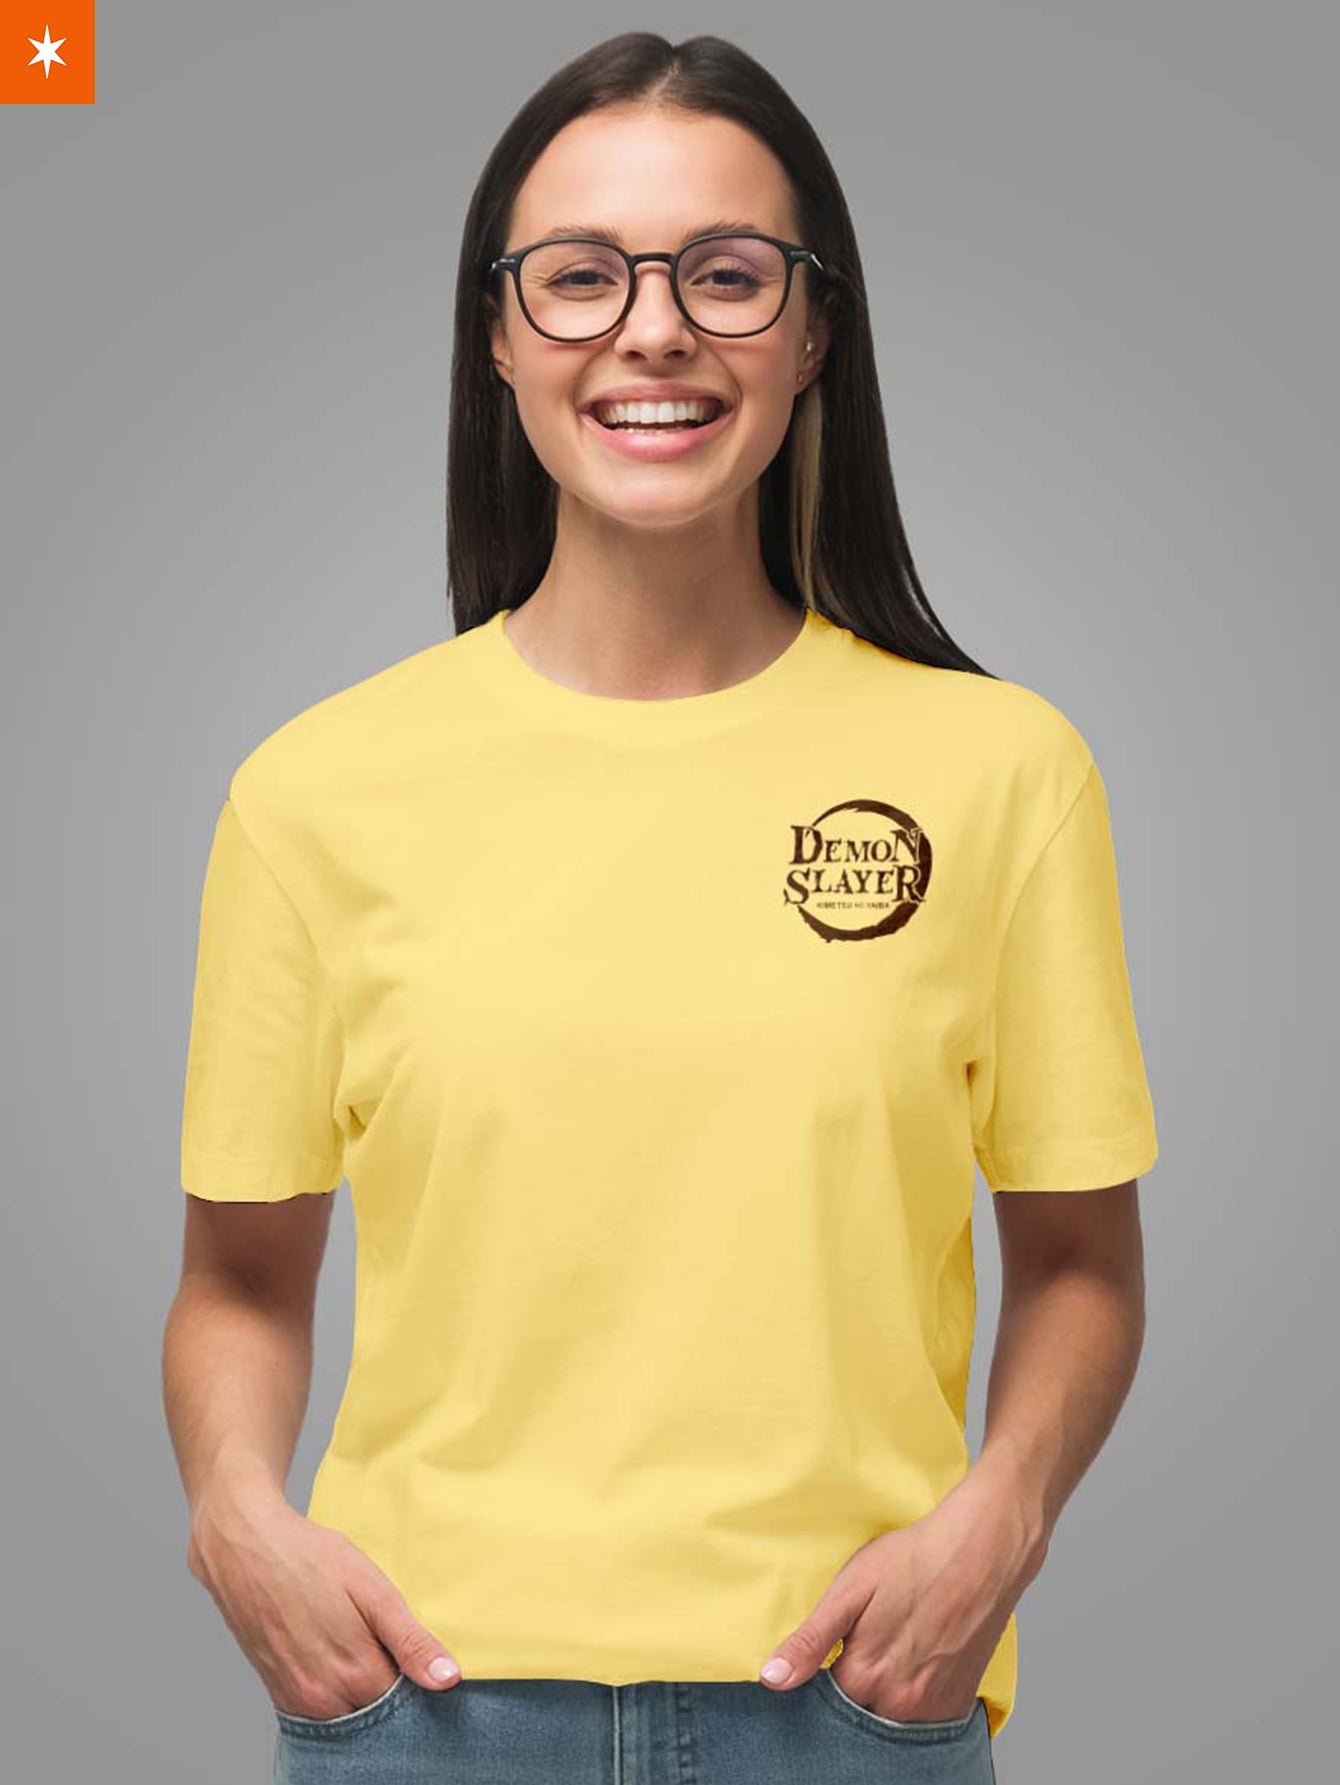 Fandomaniax - KNY Pastel Unisex T-Shirt